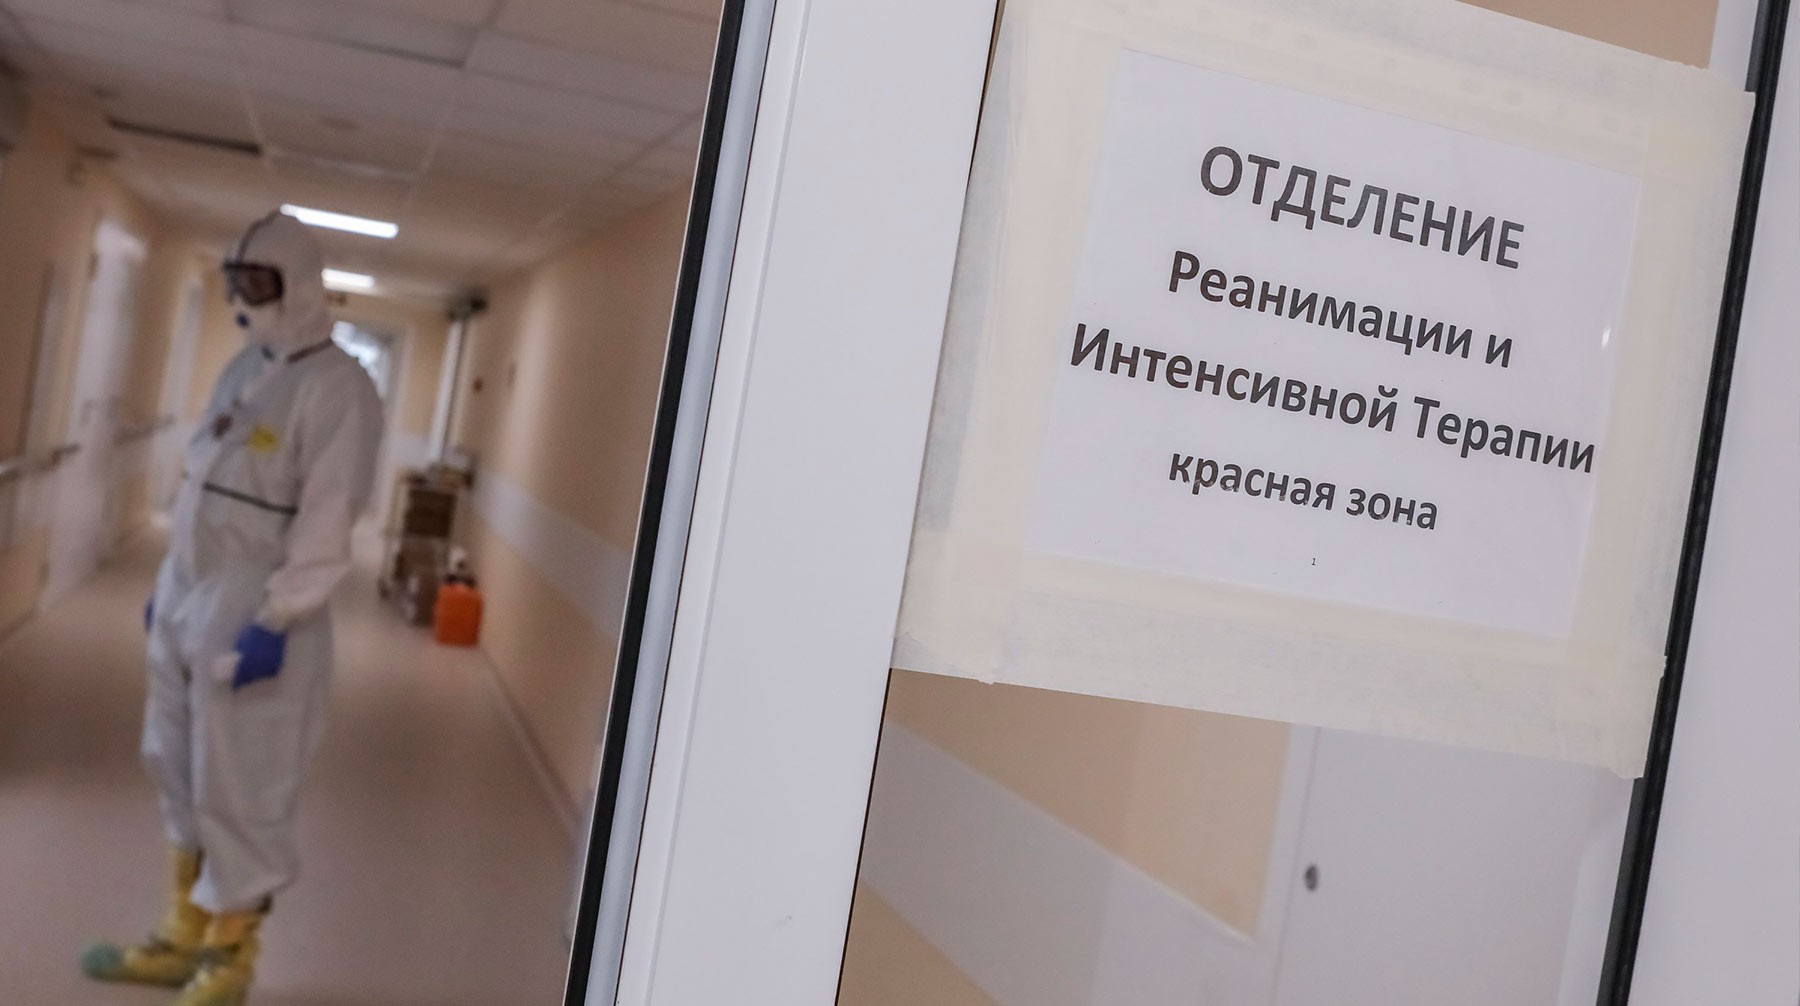 Dailystorm - В Хакасии госпитализировали пенсионерку с подозрением на COVID-19 после истерики фельдшера